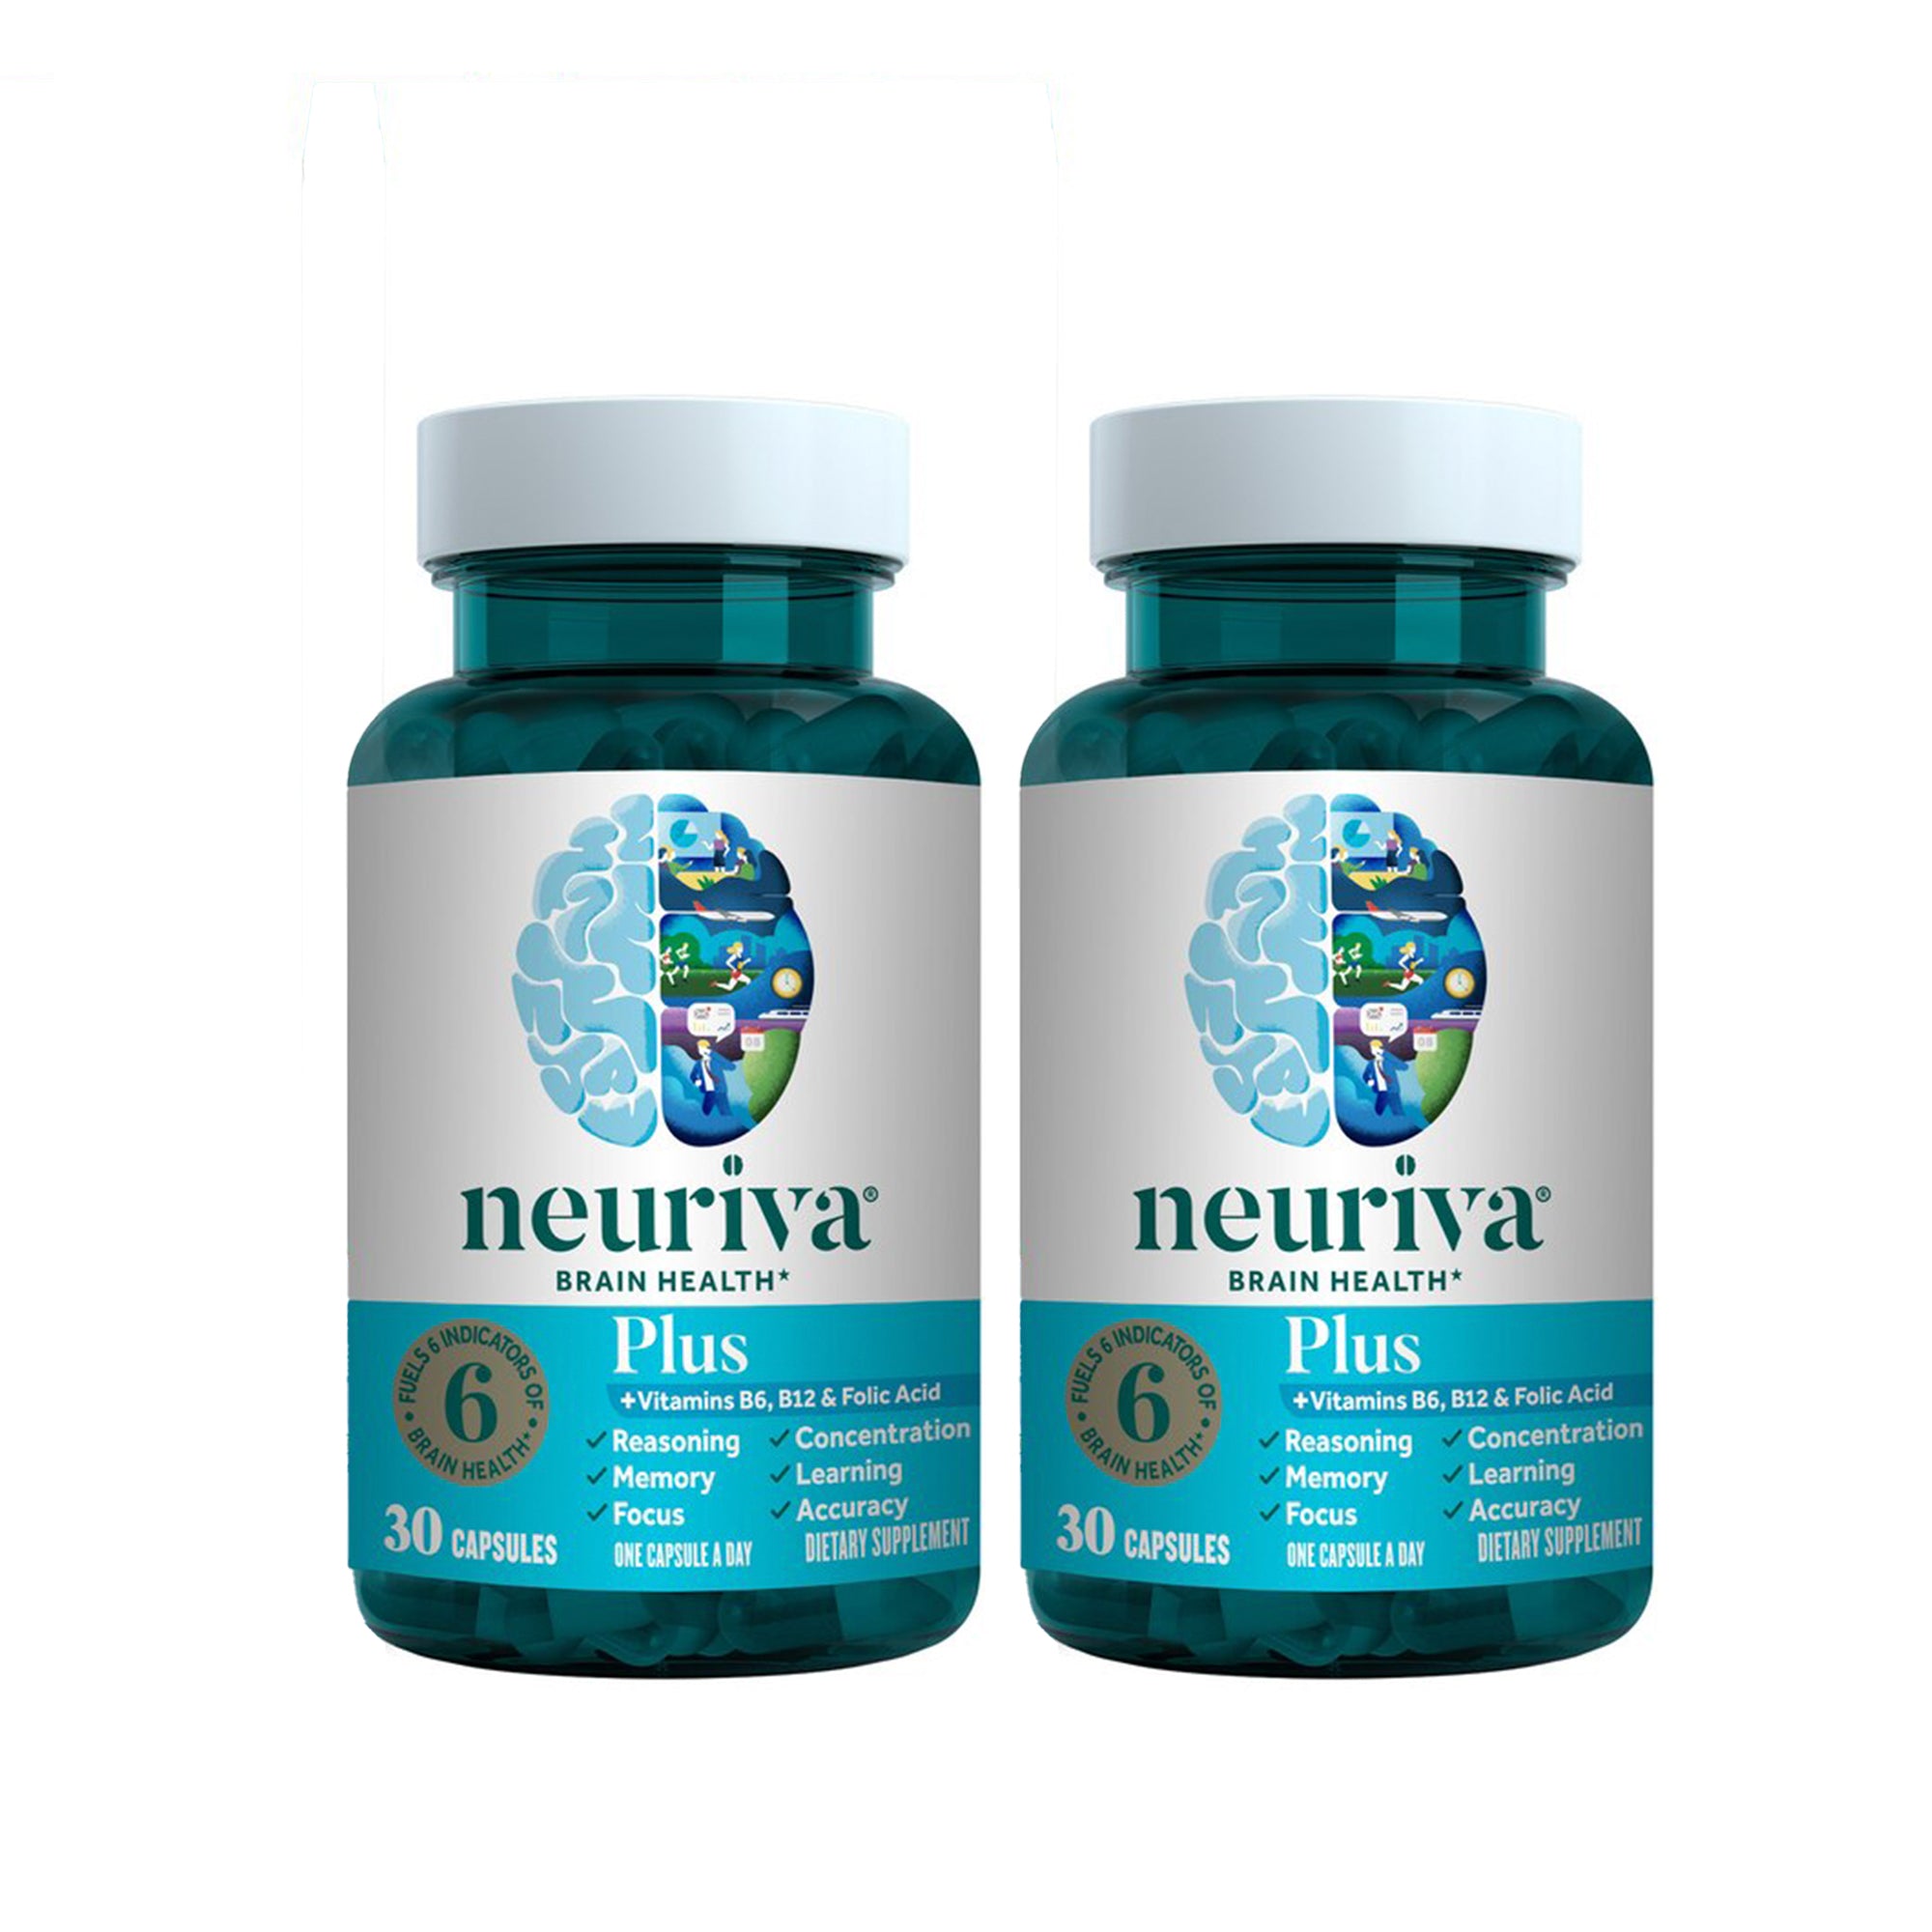 Neuriva Plus Brain Performance Capsules, 30 Count ea. - 2 Pack